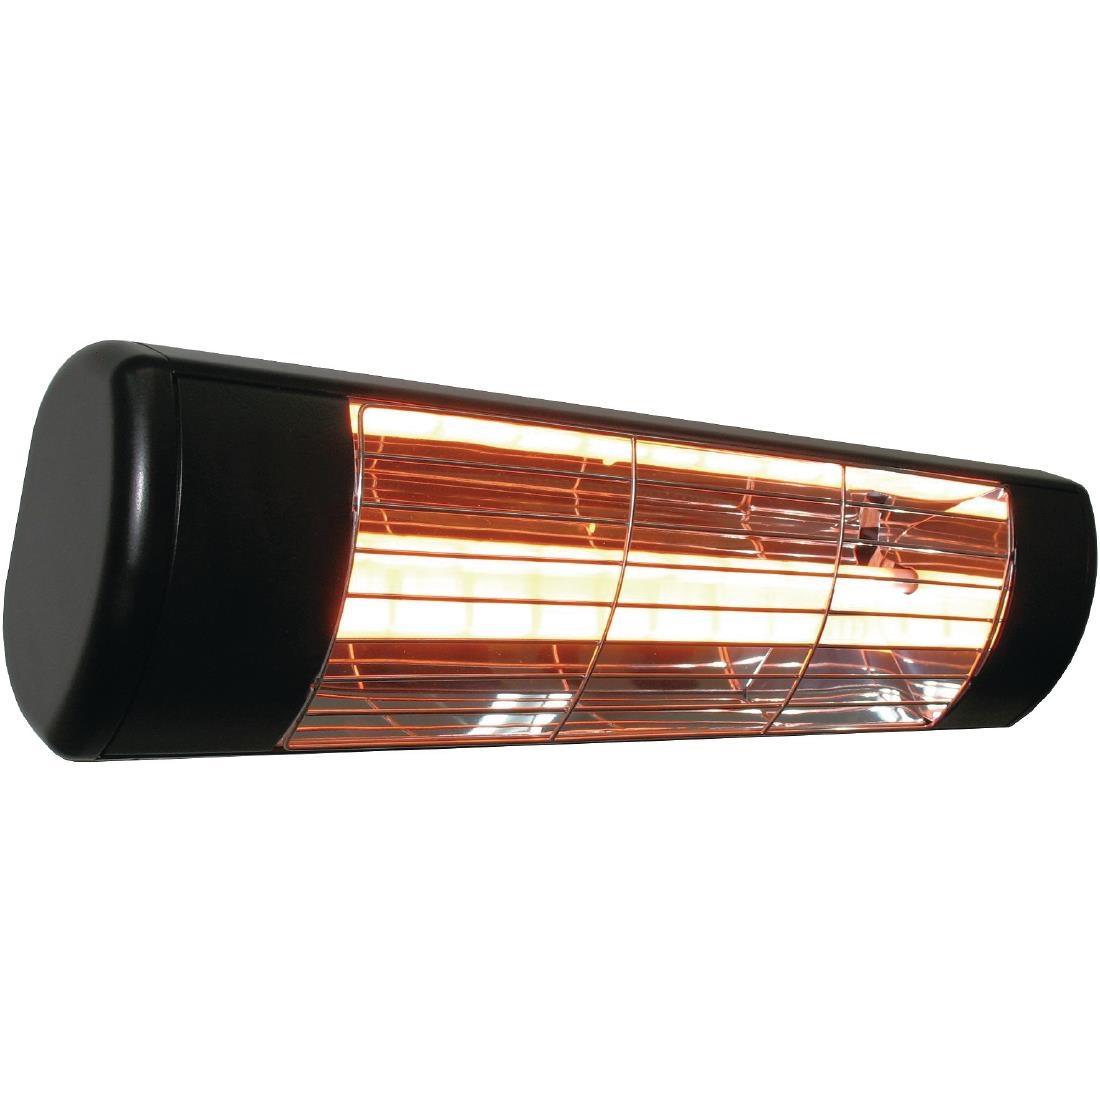 Heatlight Black Patio Heater - GH981  - 1